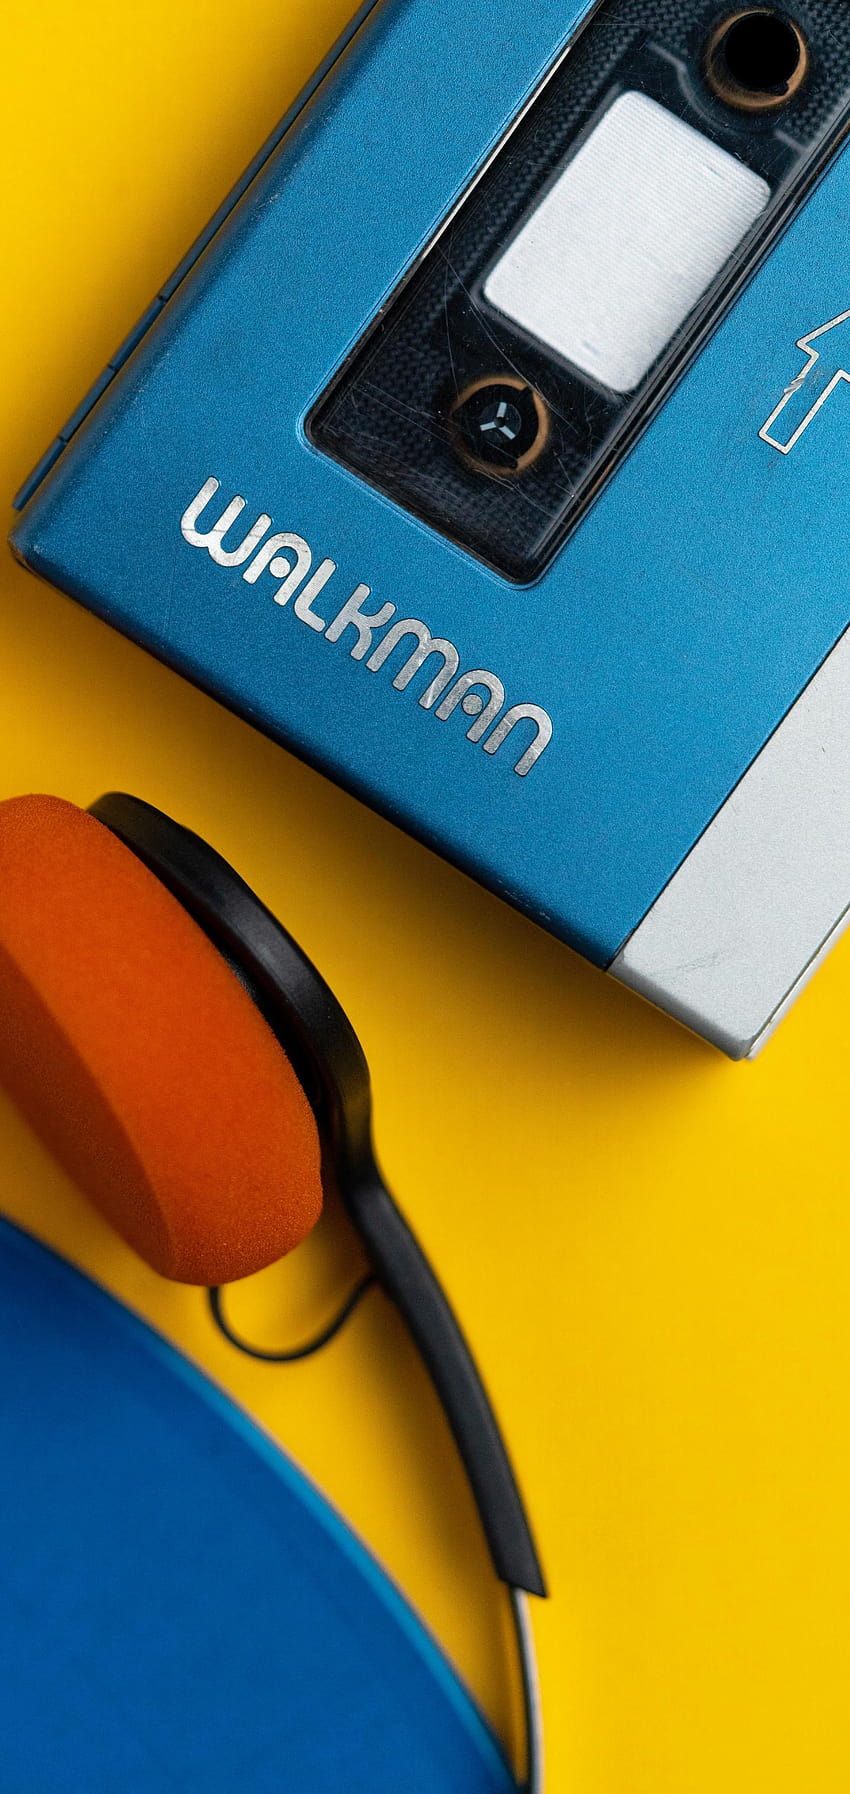 Sony Walkman Wallpapers - Top Free Sony Walkman Backgrounds -  WallpaperAccess